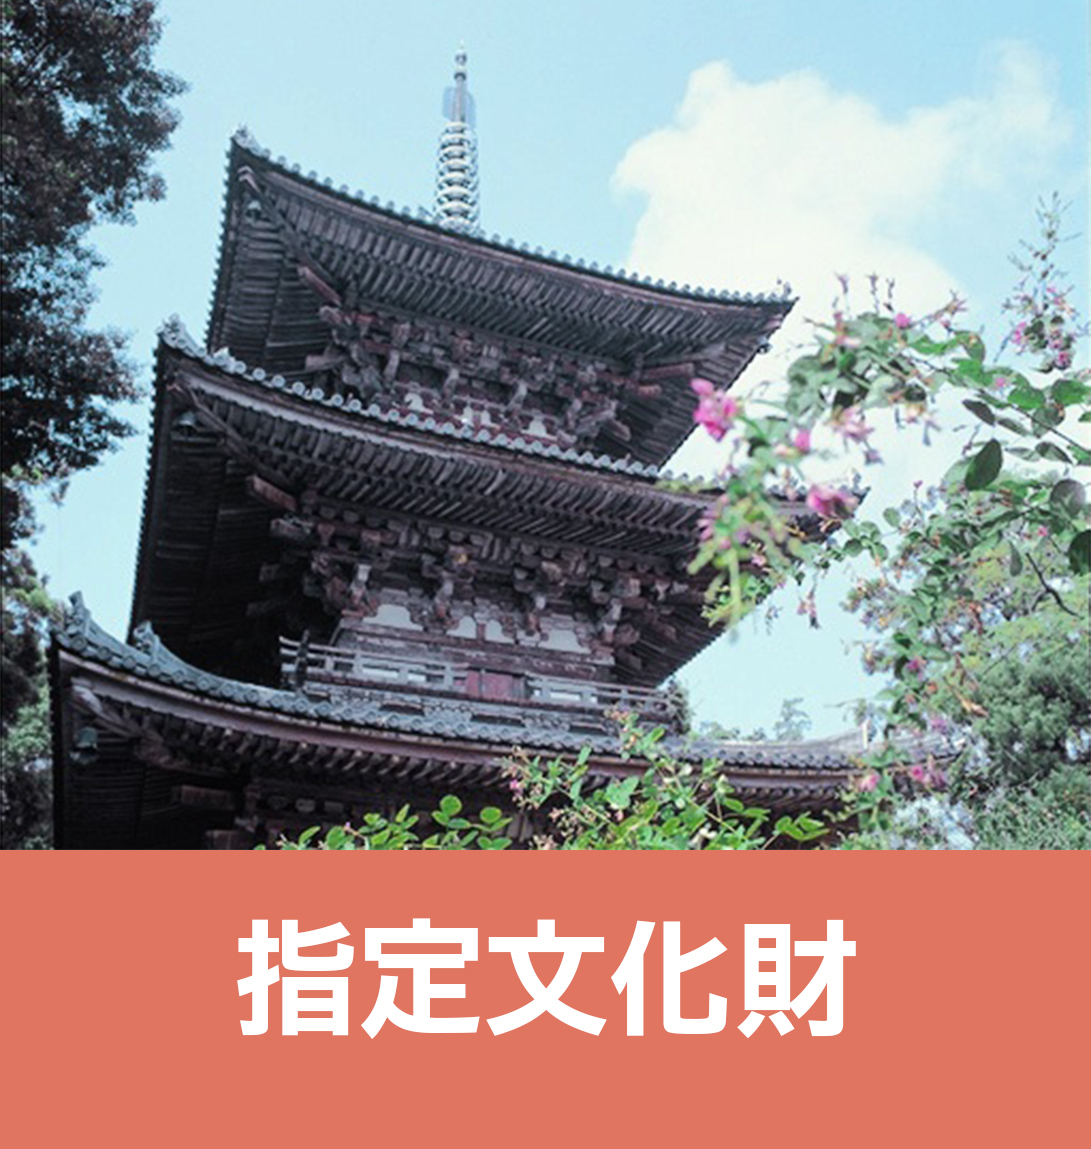 広陵町のお寺や神社の情報